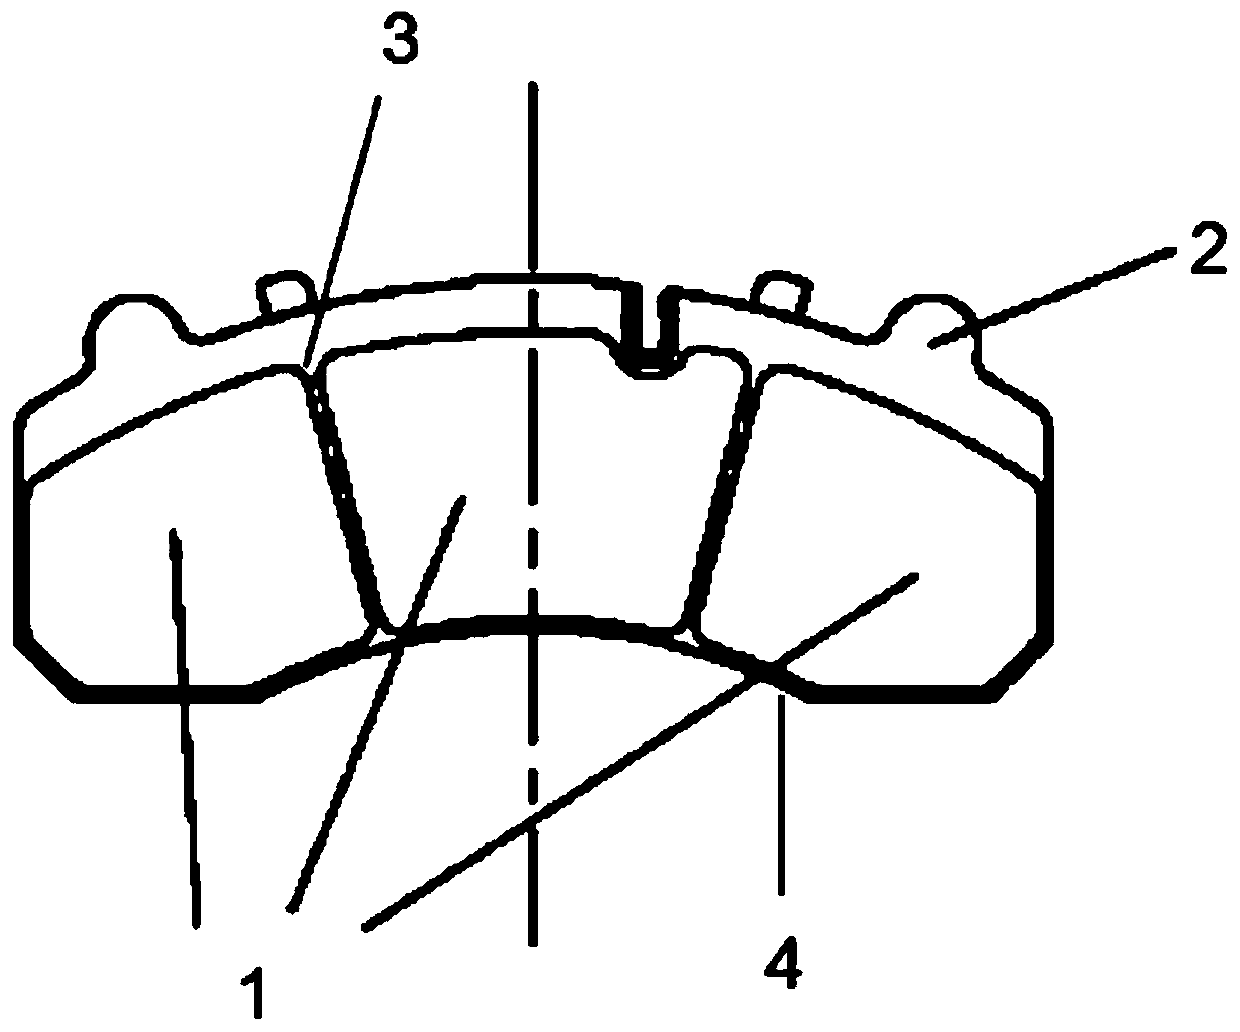 Brake pad and brake friction pair using same